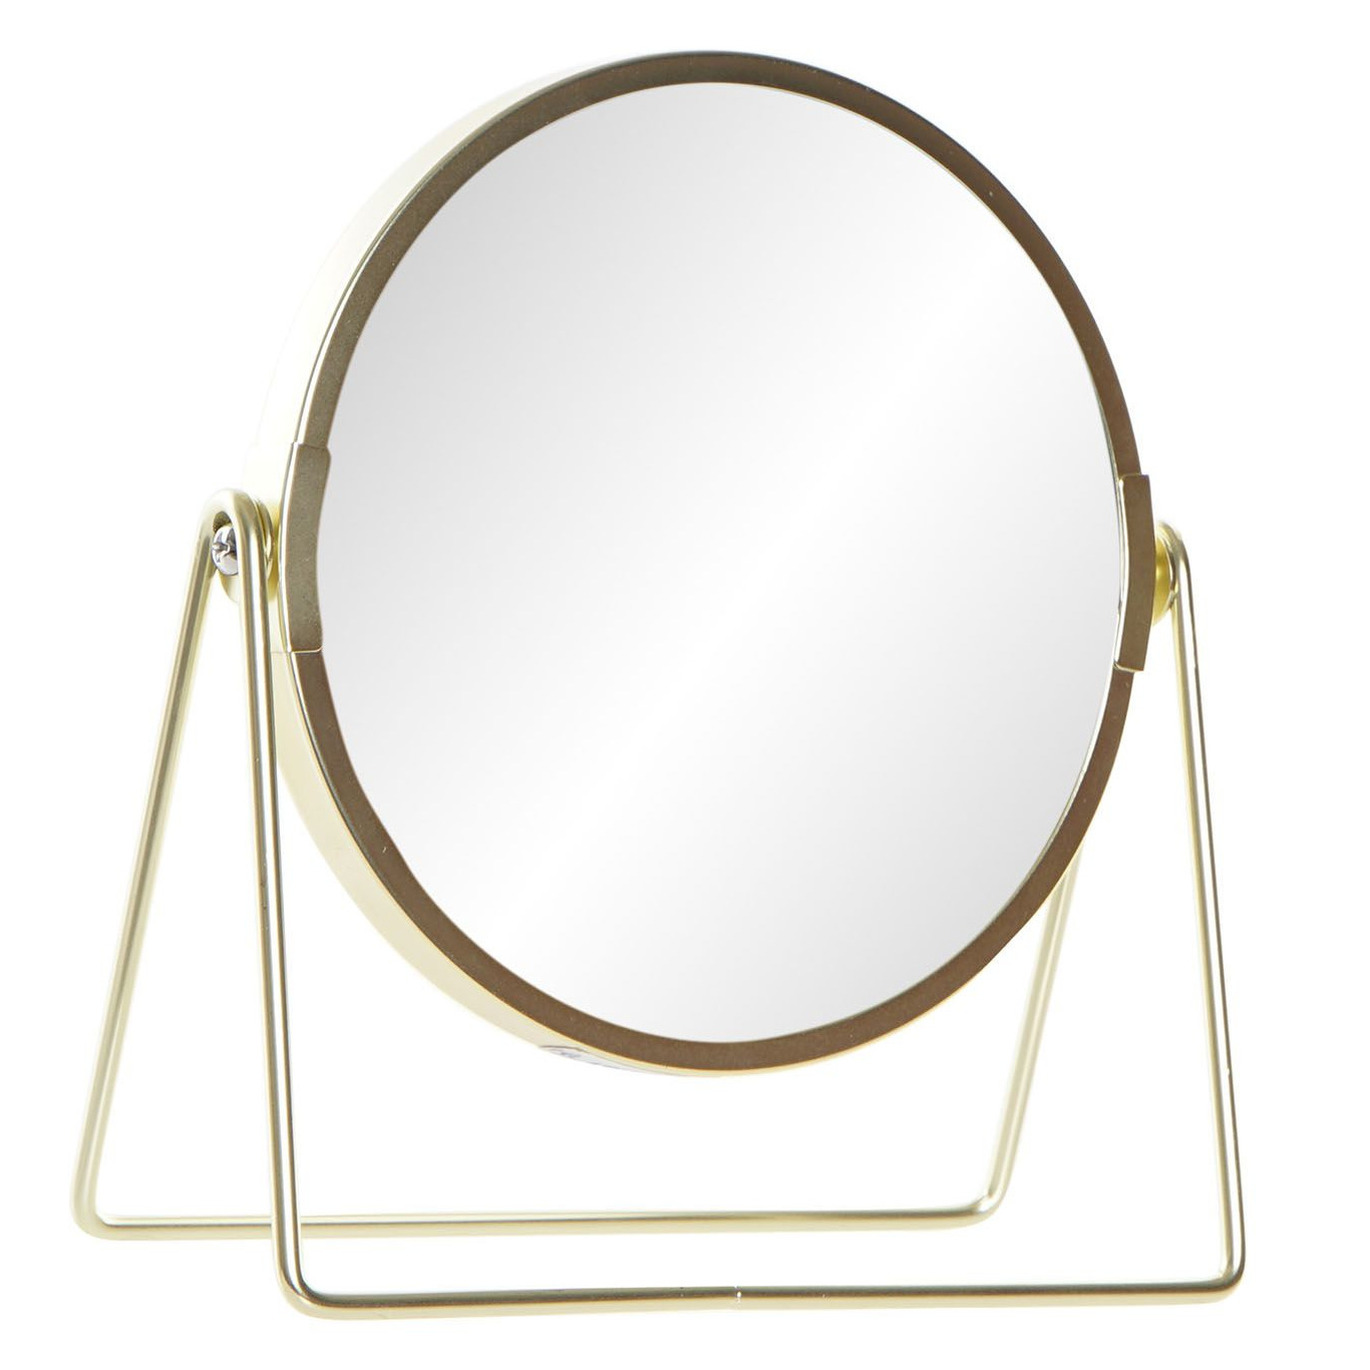 Badkamerspiegel - make-up spiegel rond dubbelzijdig RVS goud D15 x H21 cm